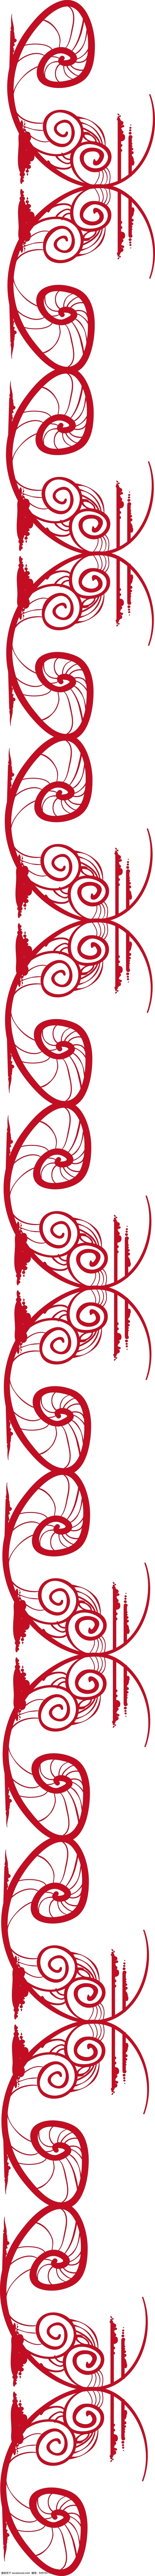 中国 元素 纹理 边框 传统 中国红 传统边框 吉祥